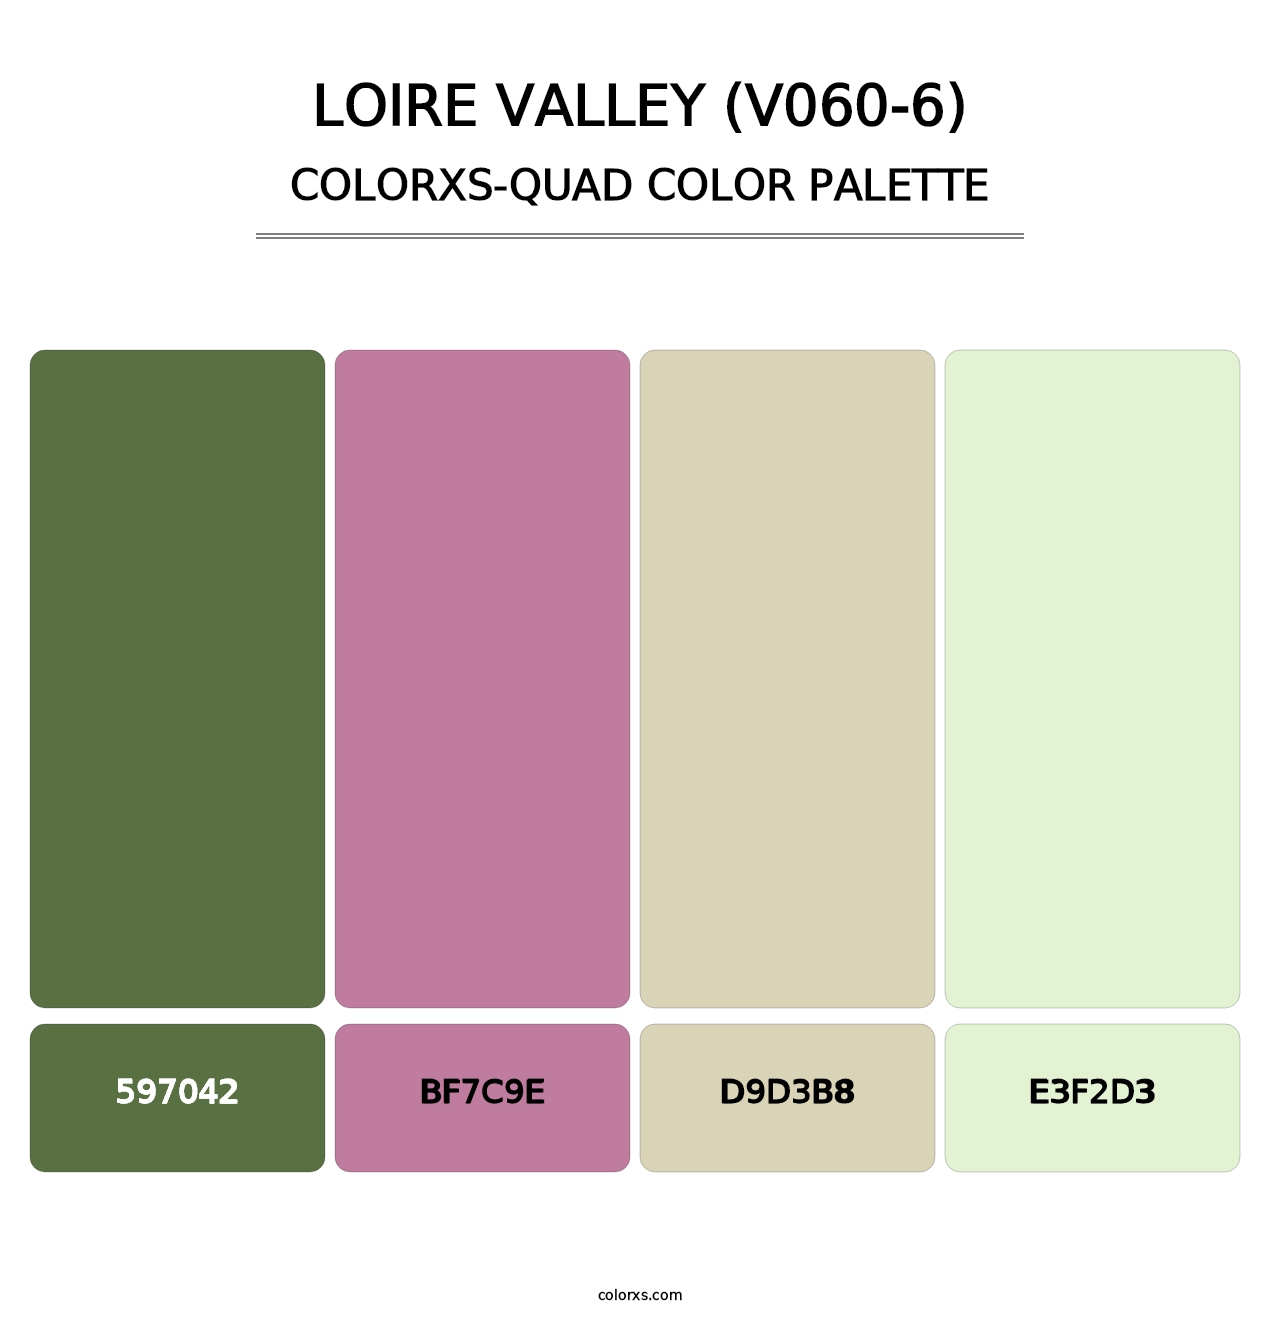 Loire Valley (V060-6) - Colorxs Quad Palette